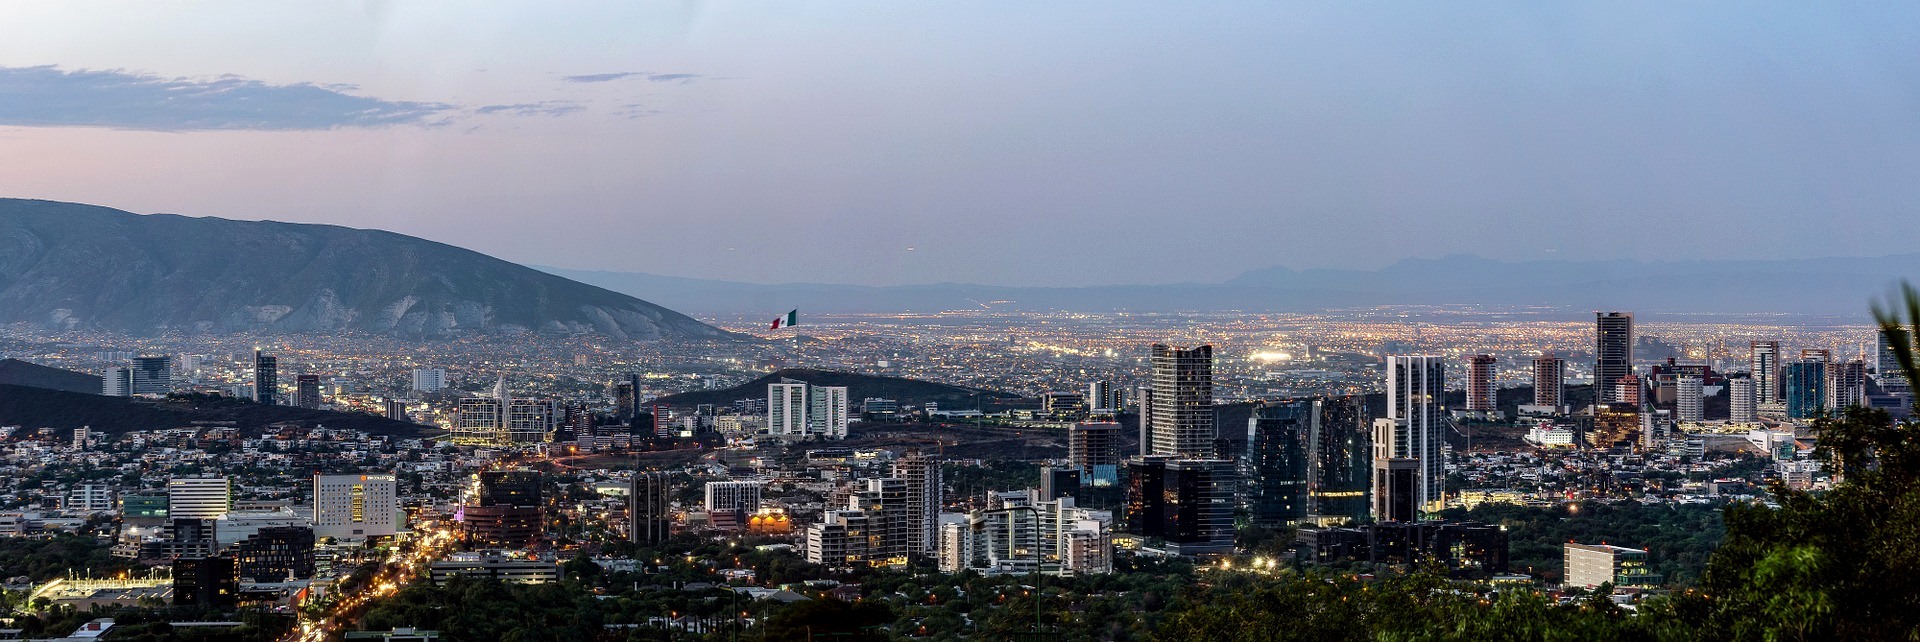 Monterrey es una de las ciudades más desarrolladas de México, tiene una gran cultura e historia. Como ya lo mencionamos es el centro de negocios, industrial y económico más importante del país y la ciudad con mejor calidad de vida.